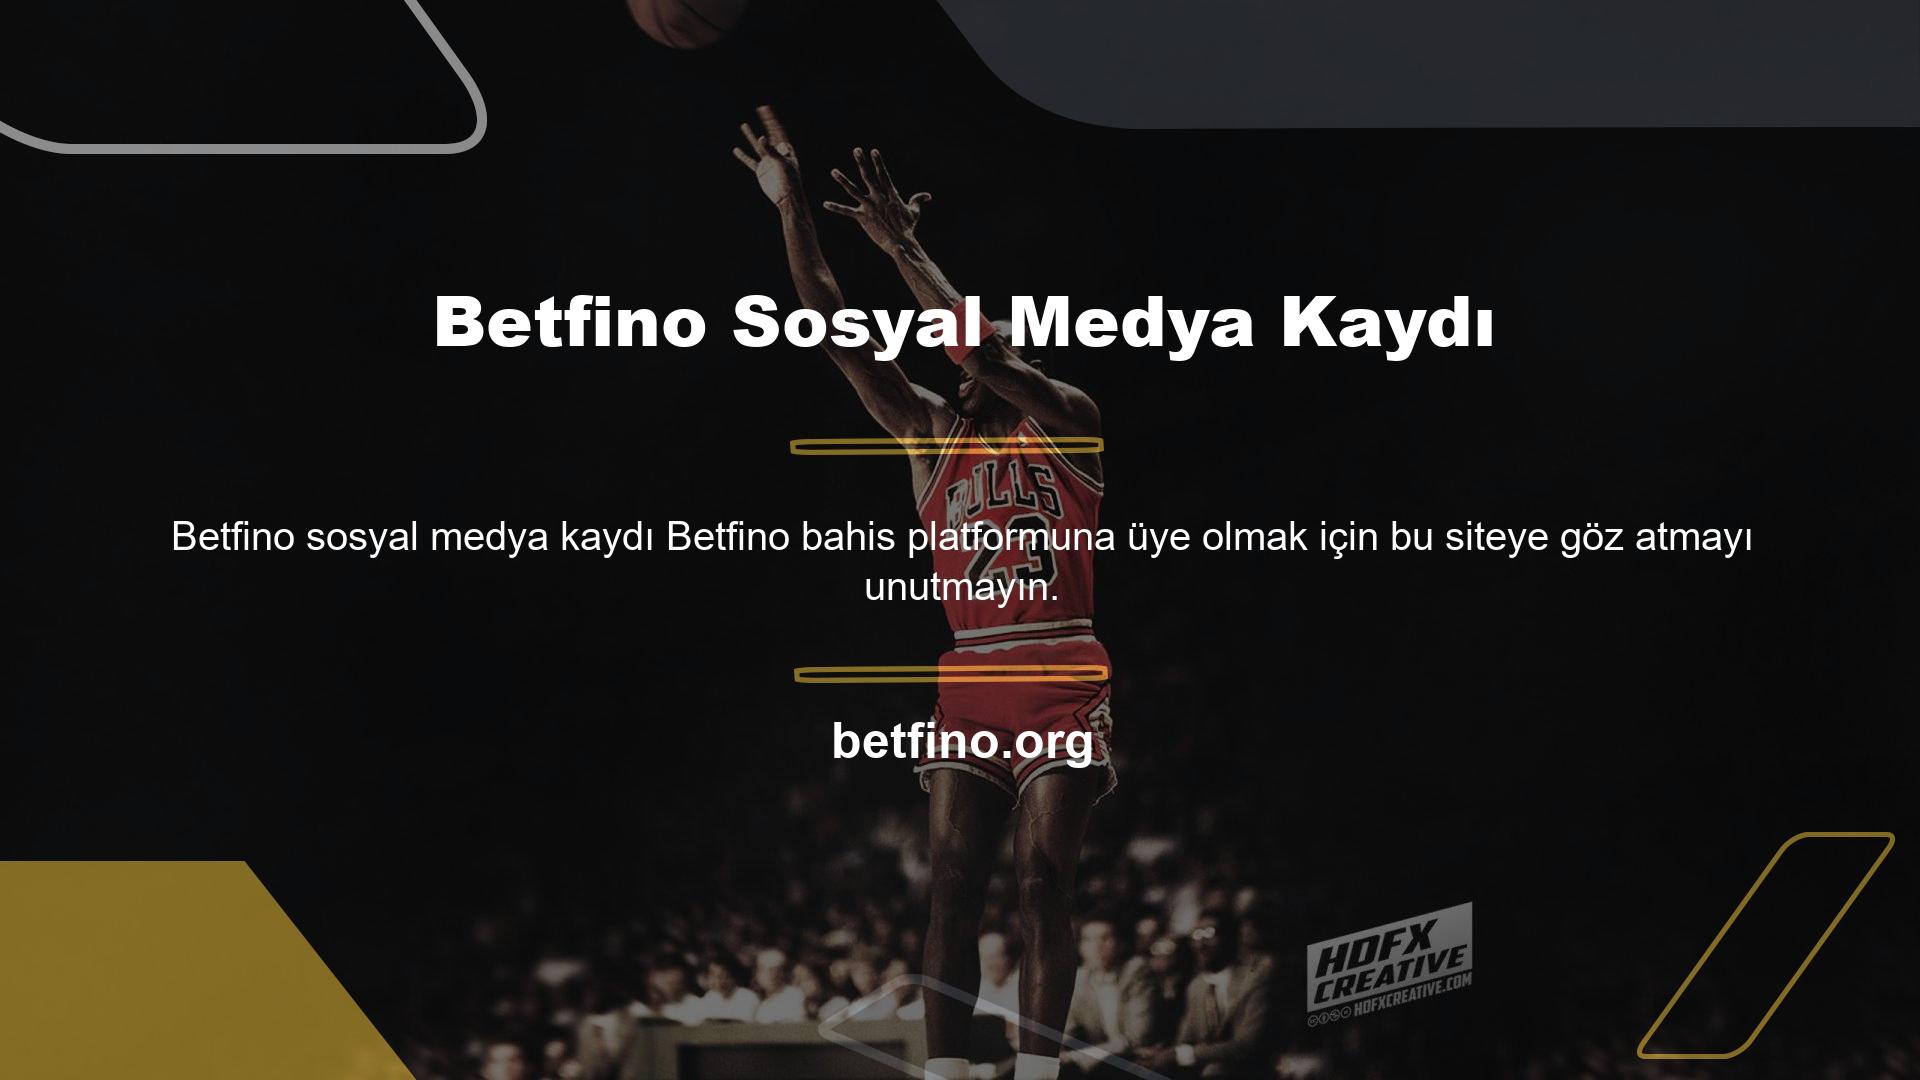 Eriştiğiniz web sitesinin halihazırda Betfino adresinin olması çok önemlidir